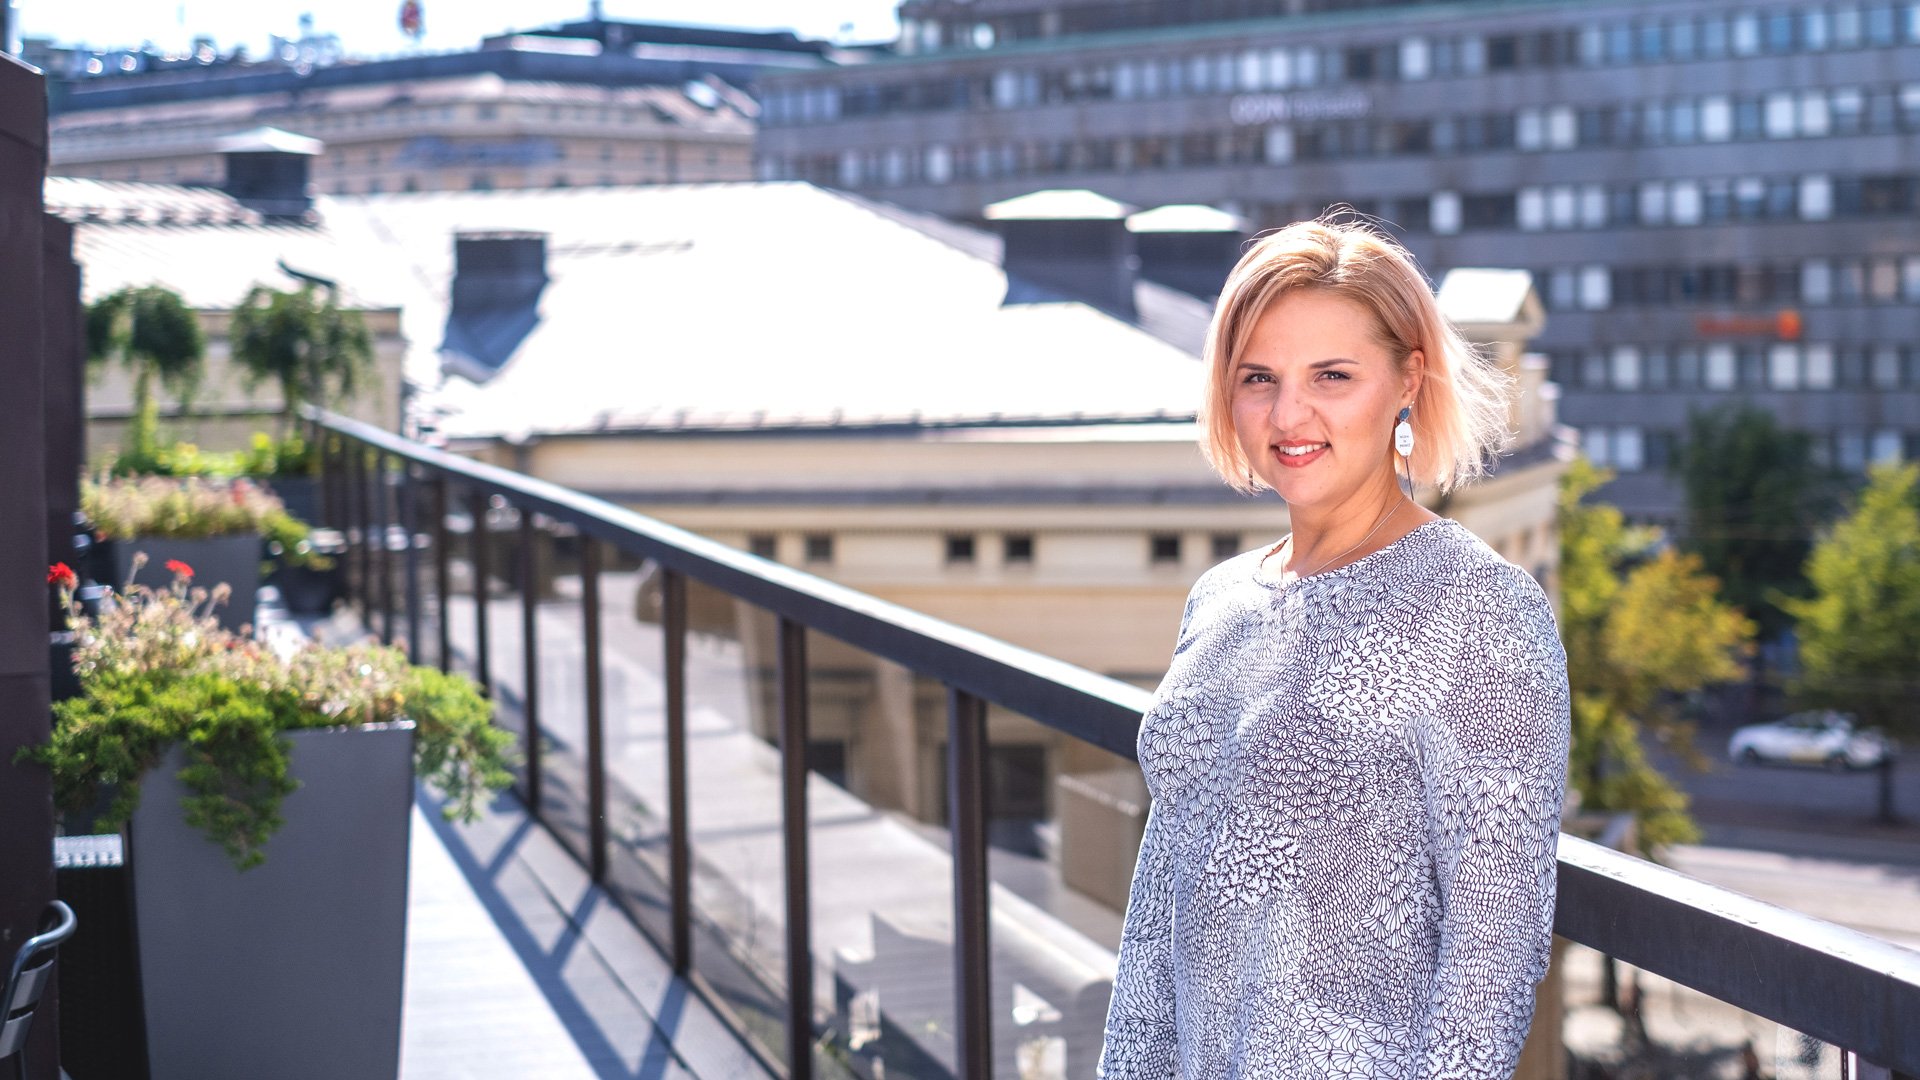 Julia Kärkkäinen Efiman toimiston kattoterassilla Julia aloitti Efimalla taloushallinnon ulkoistuspalveluissa kesällä 2018, ja luottamus omaan tekemiseen kantoi pian hedelmää.